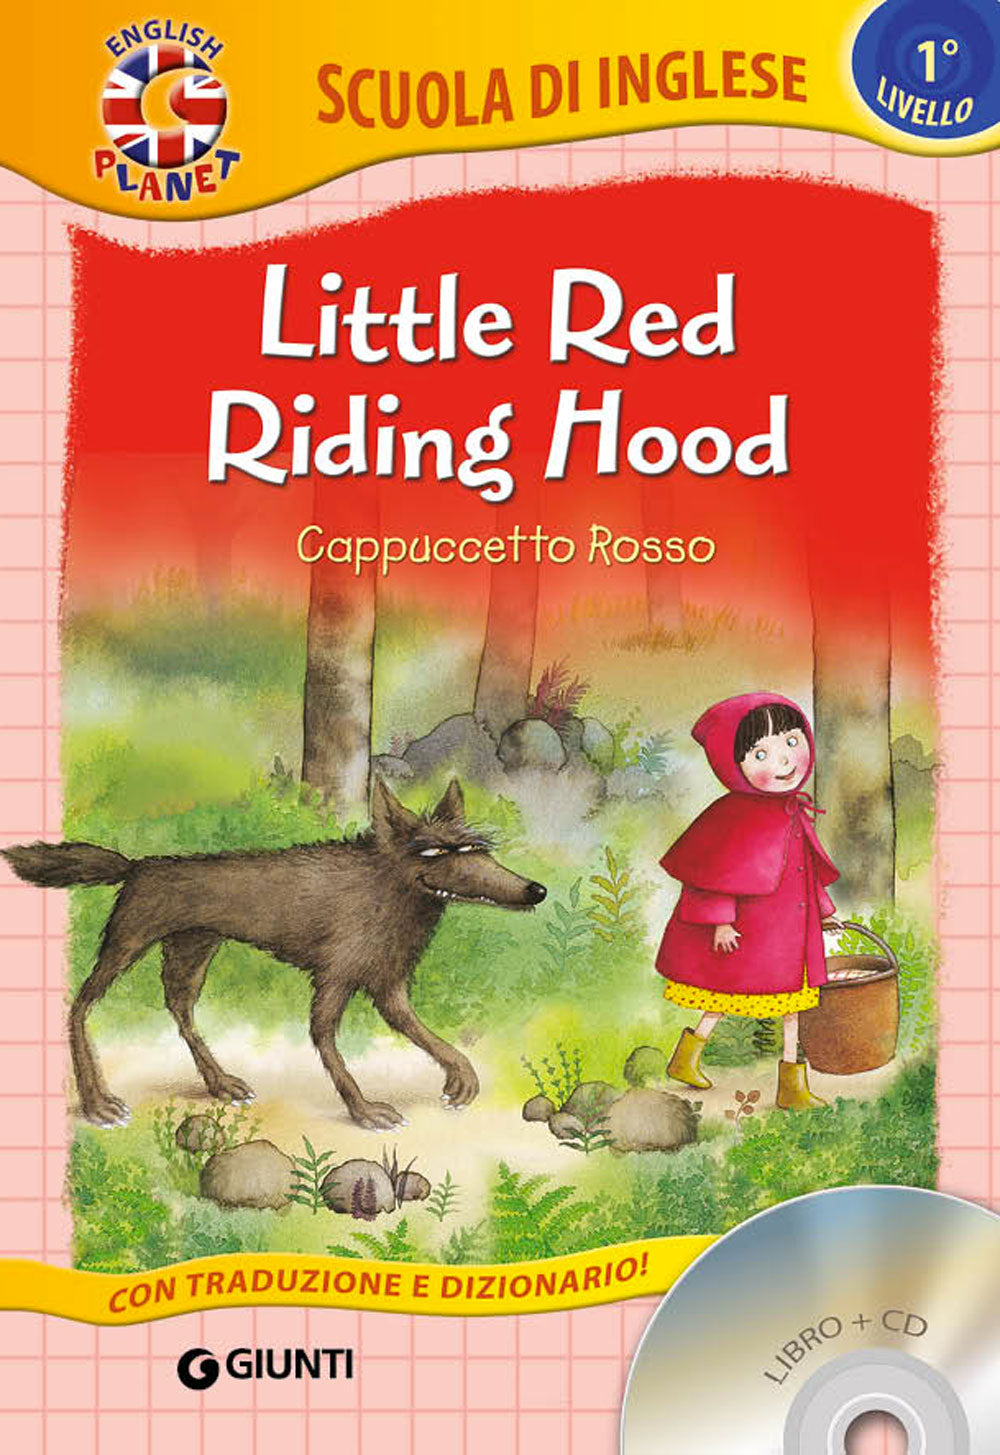 Little Red Riding Hood + CD. Cappuccetto Rosso - Con traduzione e dizionario!